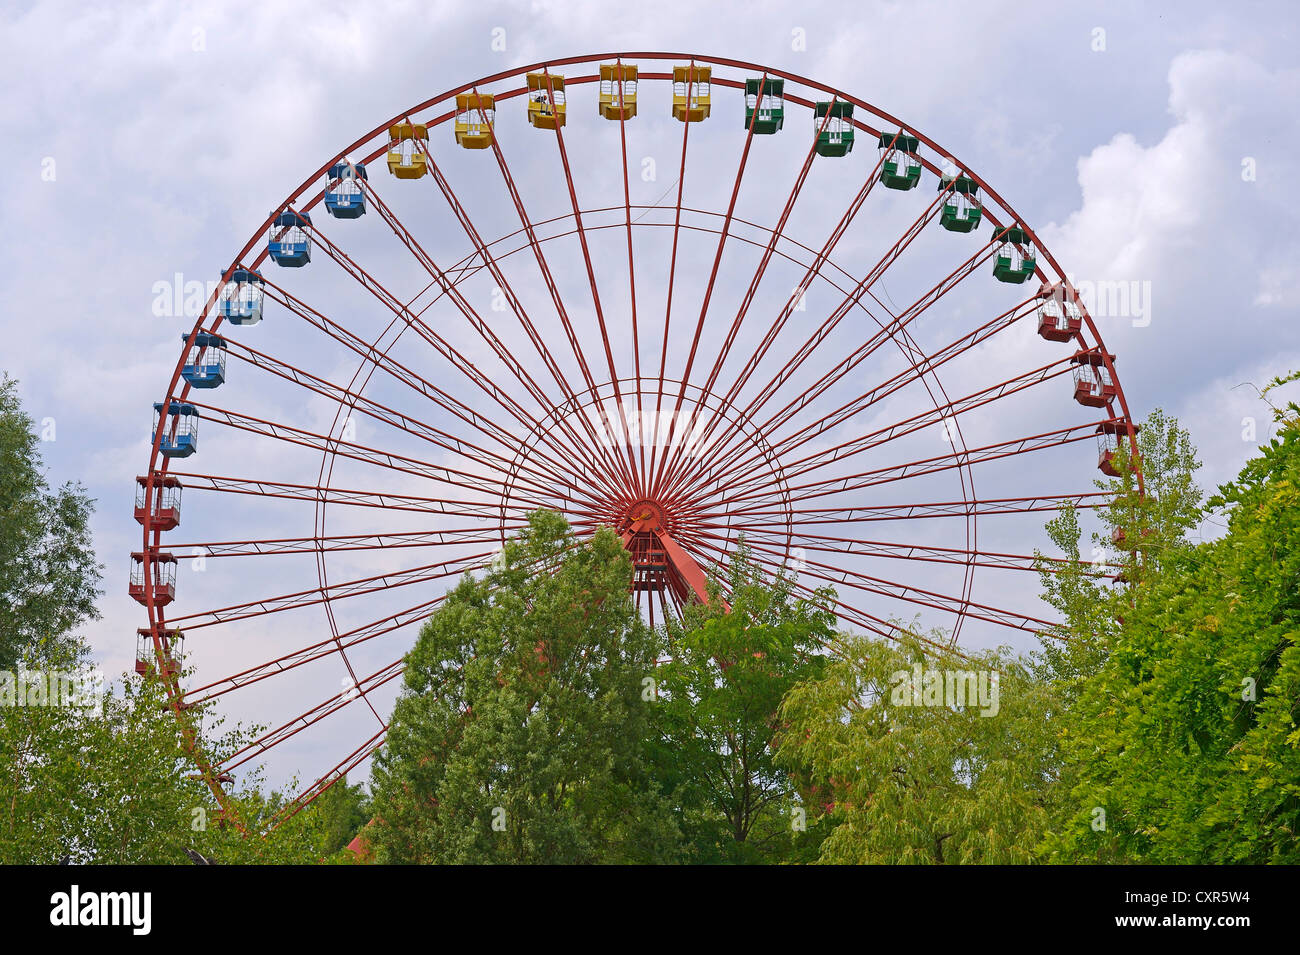 Visualizzazione nascosta del 45-metro-alta ruota panoramica Ferris nella ex Berlino Spreepark Amusement Park, precedentemente noto come Kulturpark Foto Stock